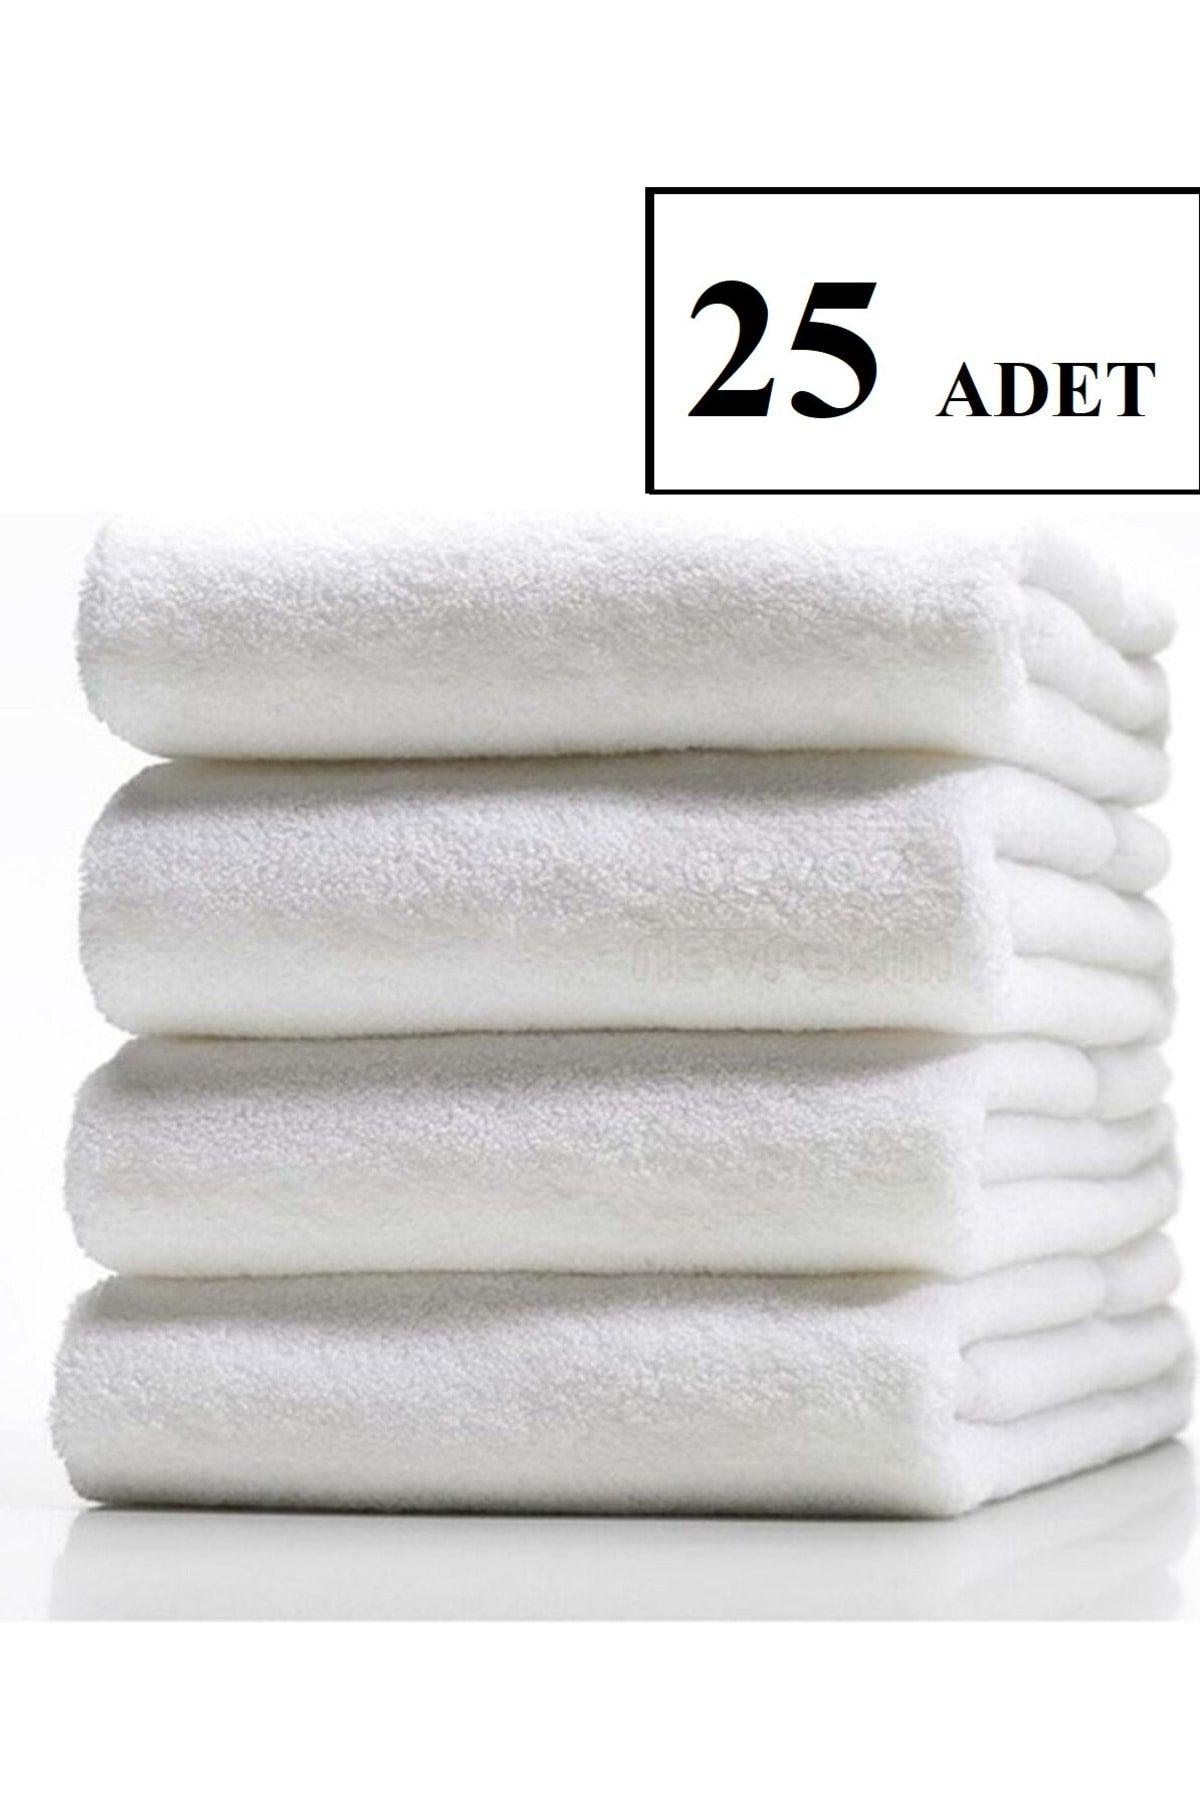 25 Pcs Hotel Towels (50x90cm - 220 Grams) - Swordslife